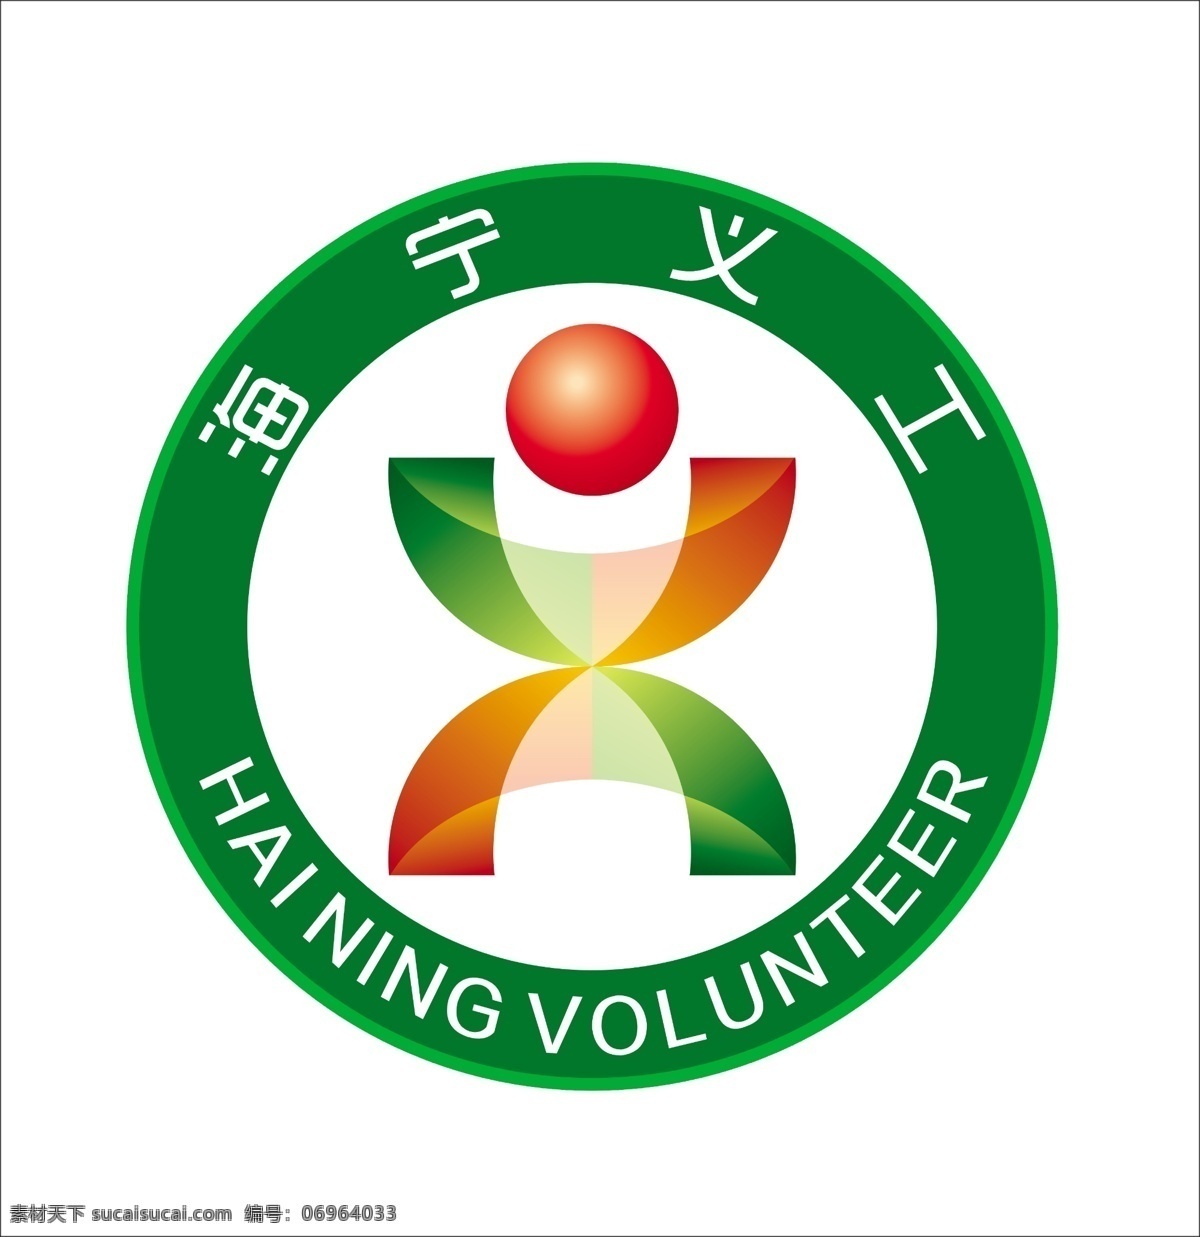 海宁 义工 logo psd文件 图标 海宁义工 志愿者协会 psd源文件 logo设计